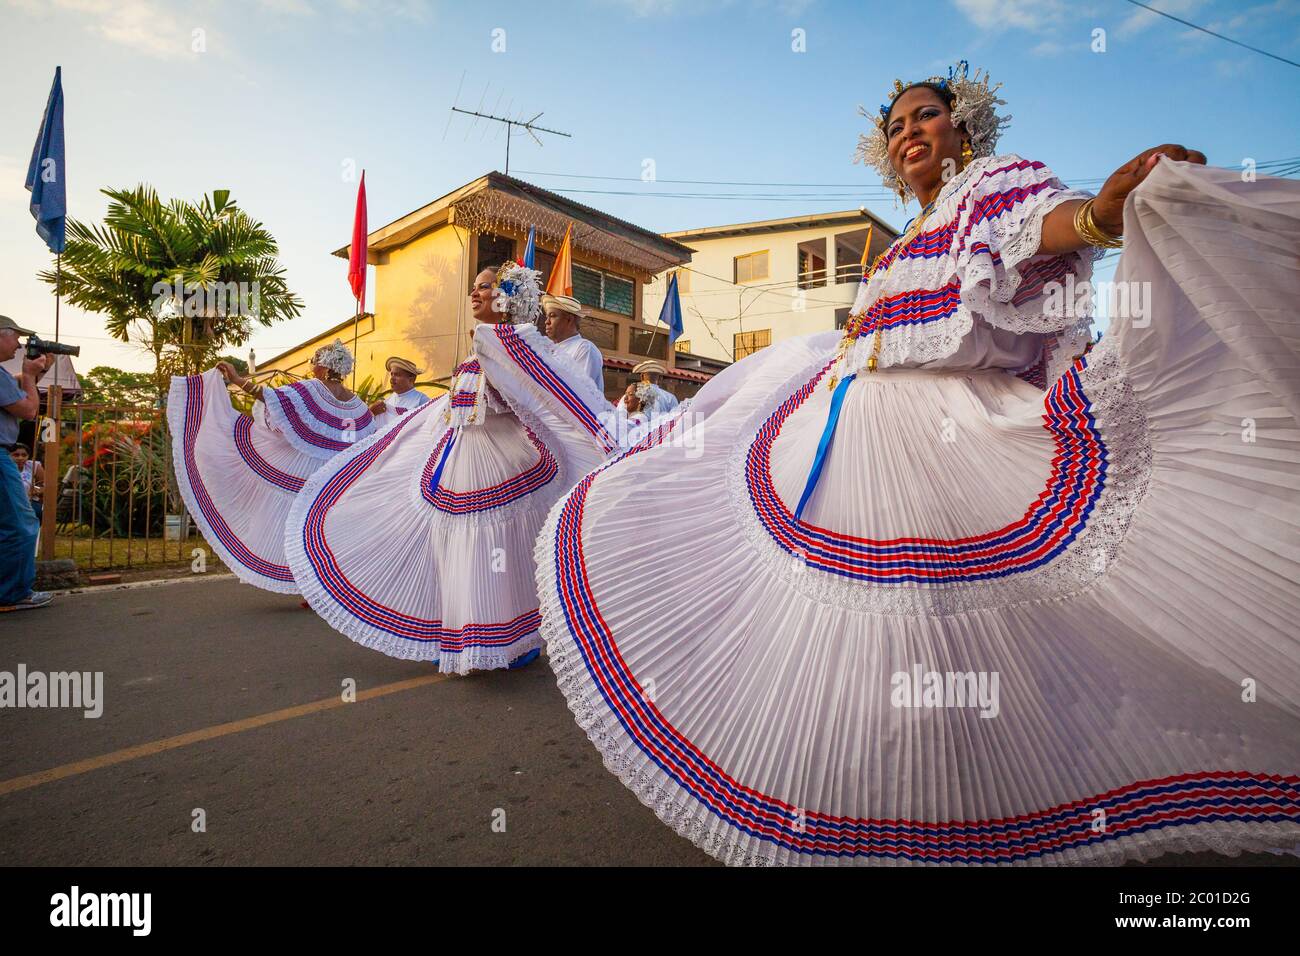 Women dressed in polleras on the annual event 'El desfile de las mil polleras' in Las Tablas, Los Santos province, Republic of Panama. Stock Photo